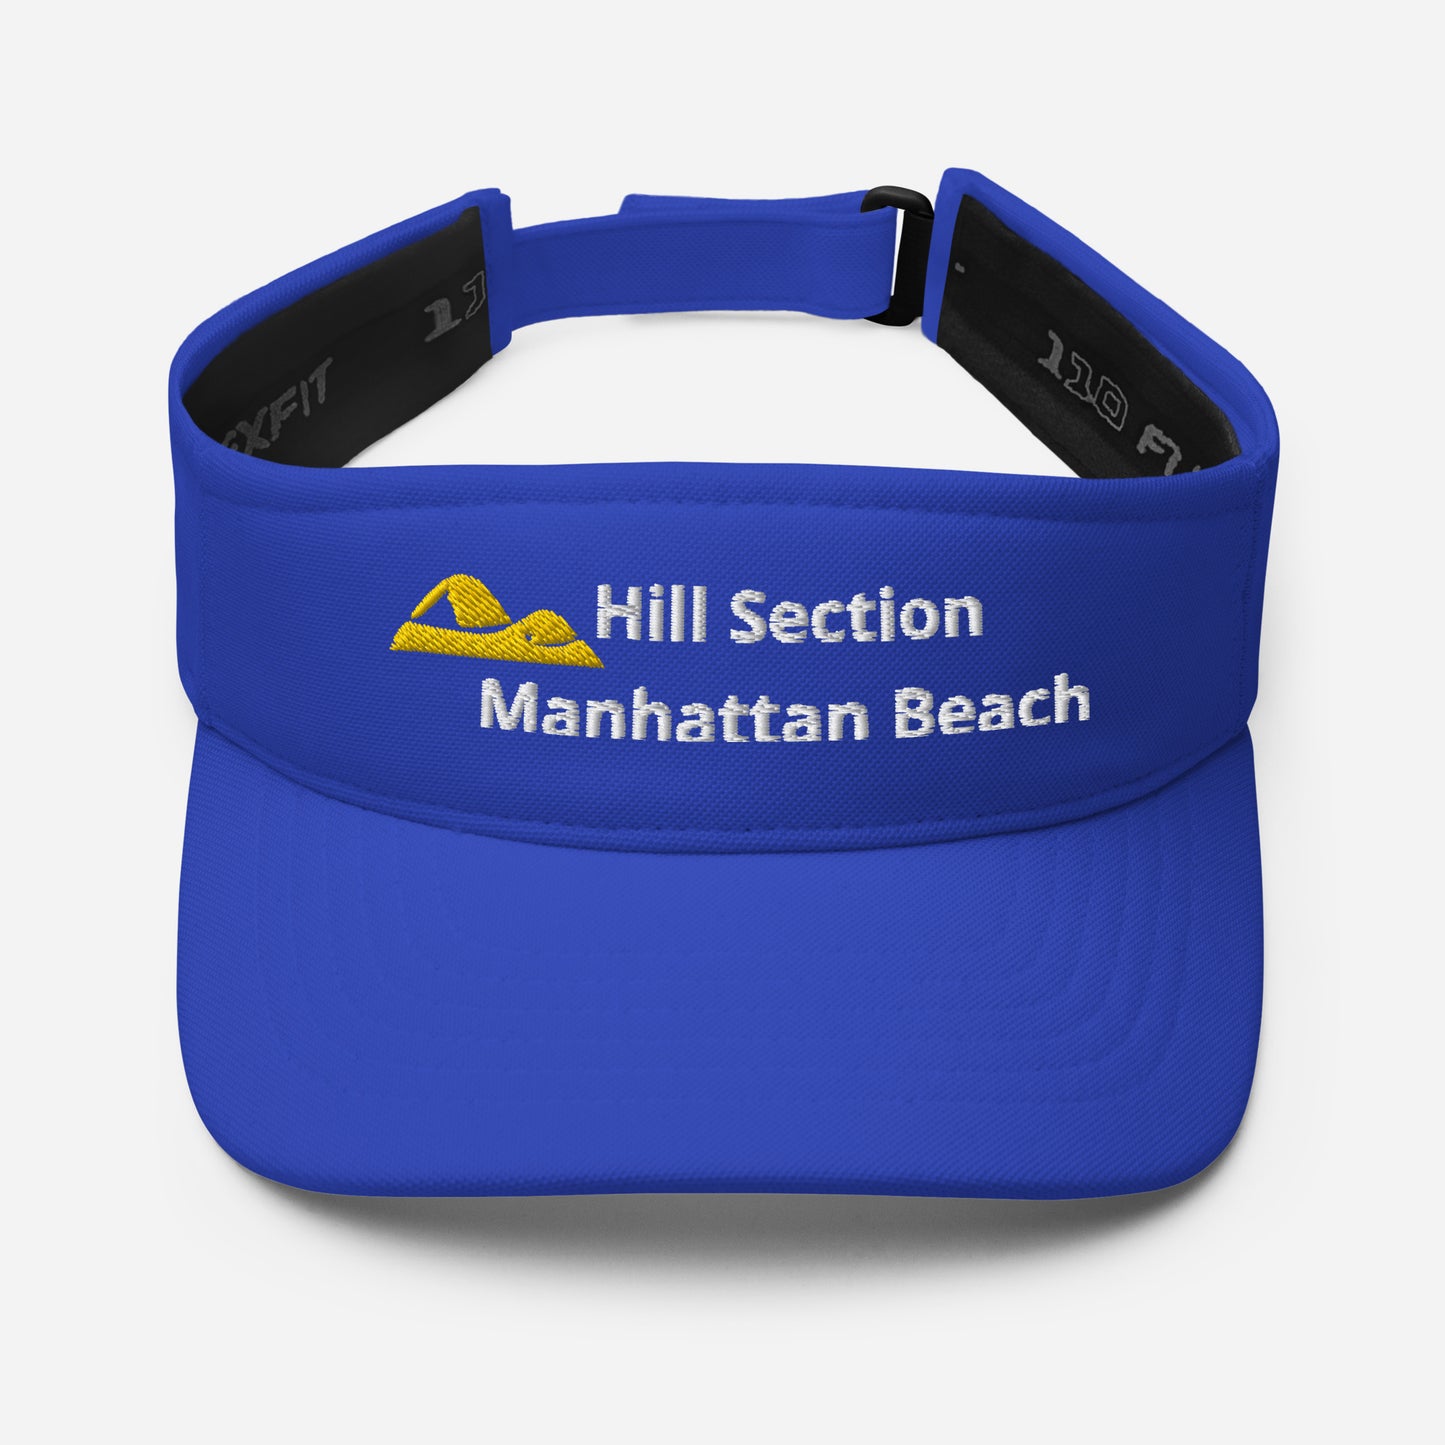 Hill Section Manhattan Beach - California - Visor